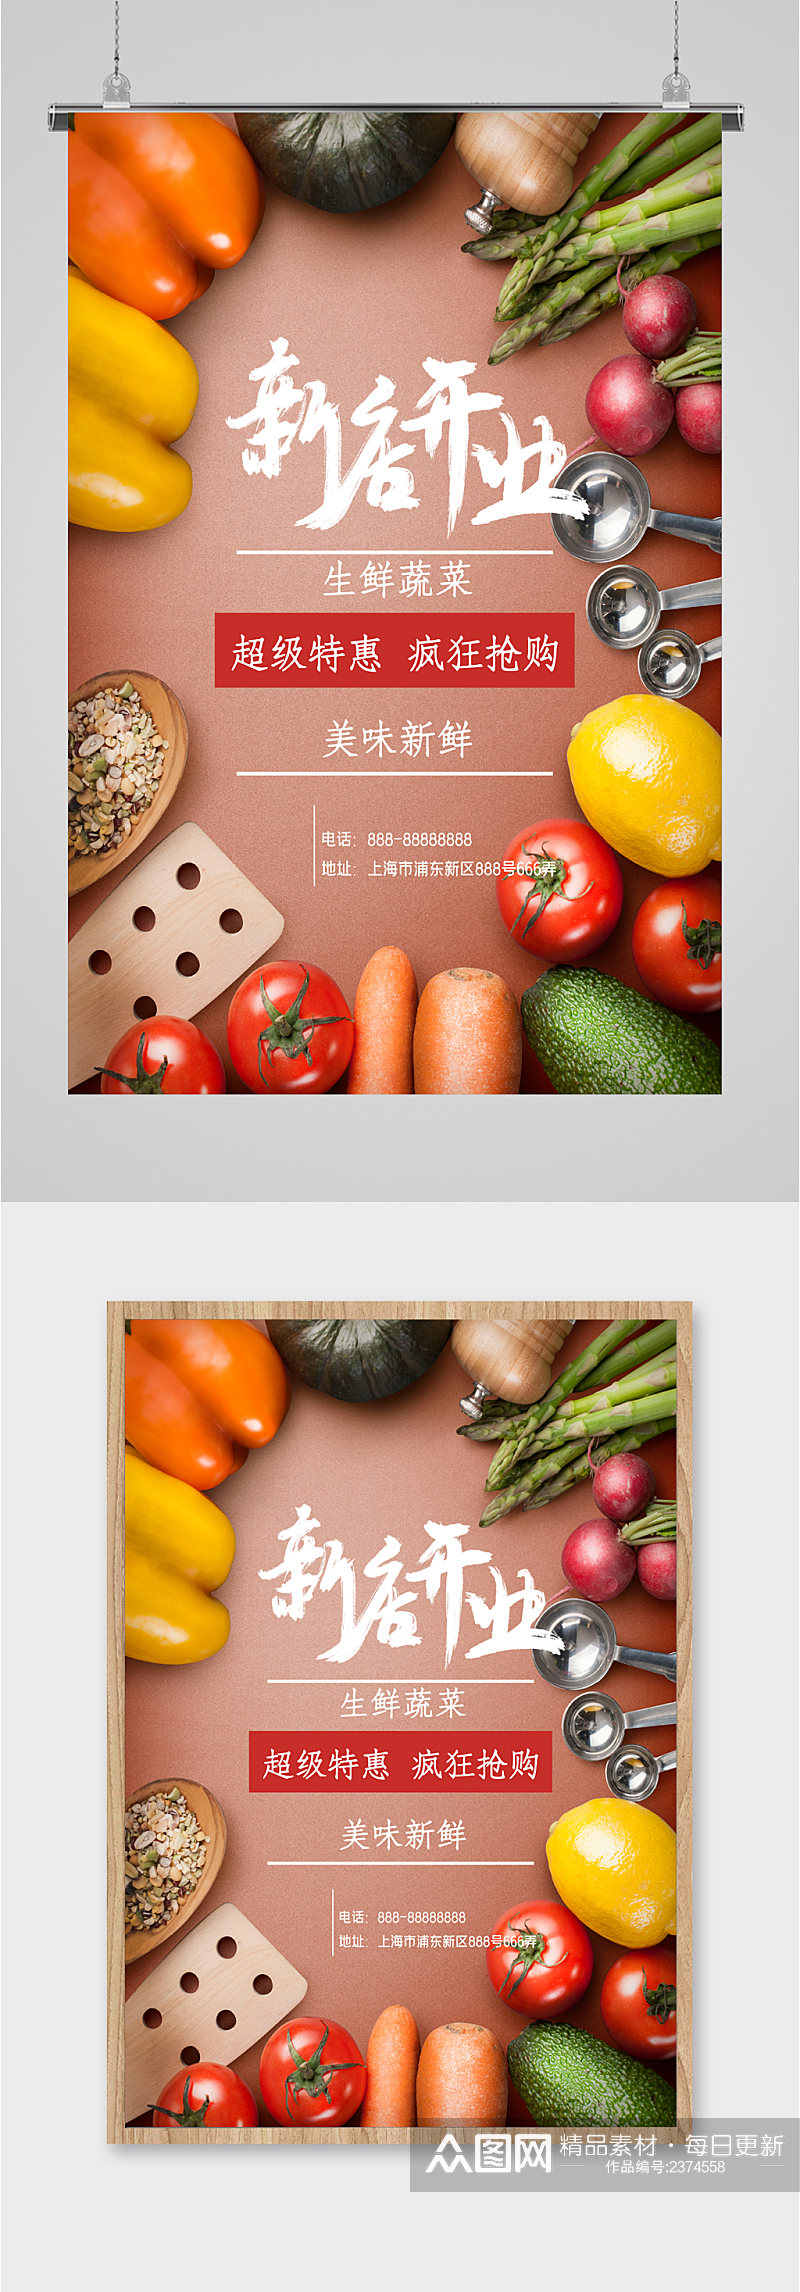 生鲜蔬菜新店开业海报素材